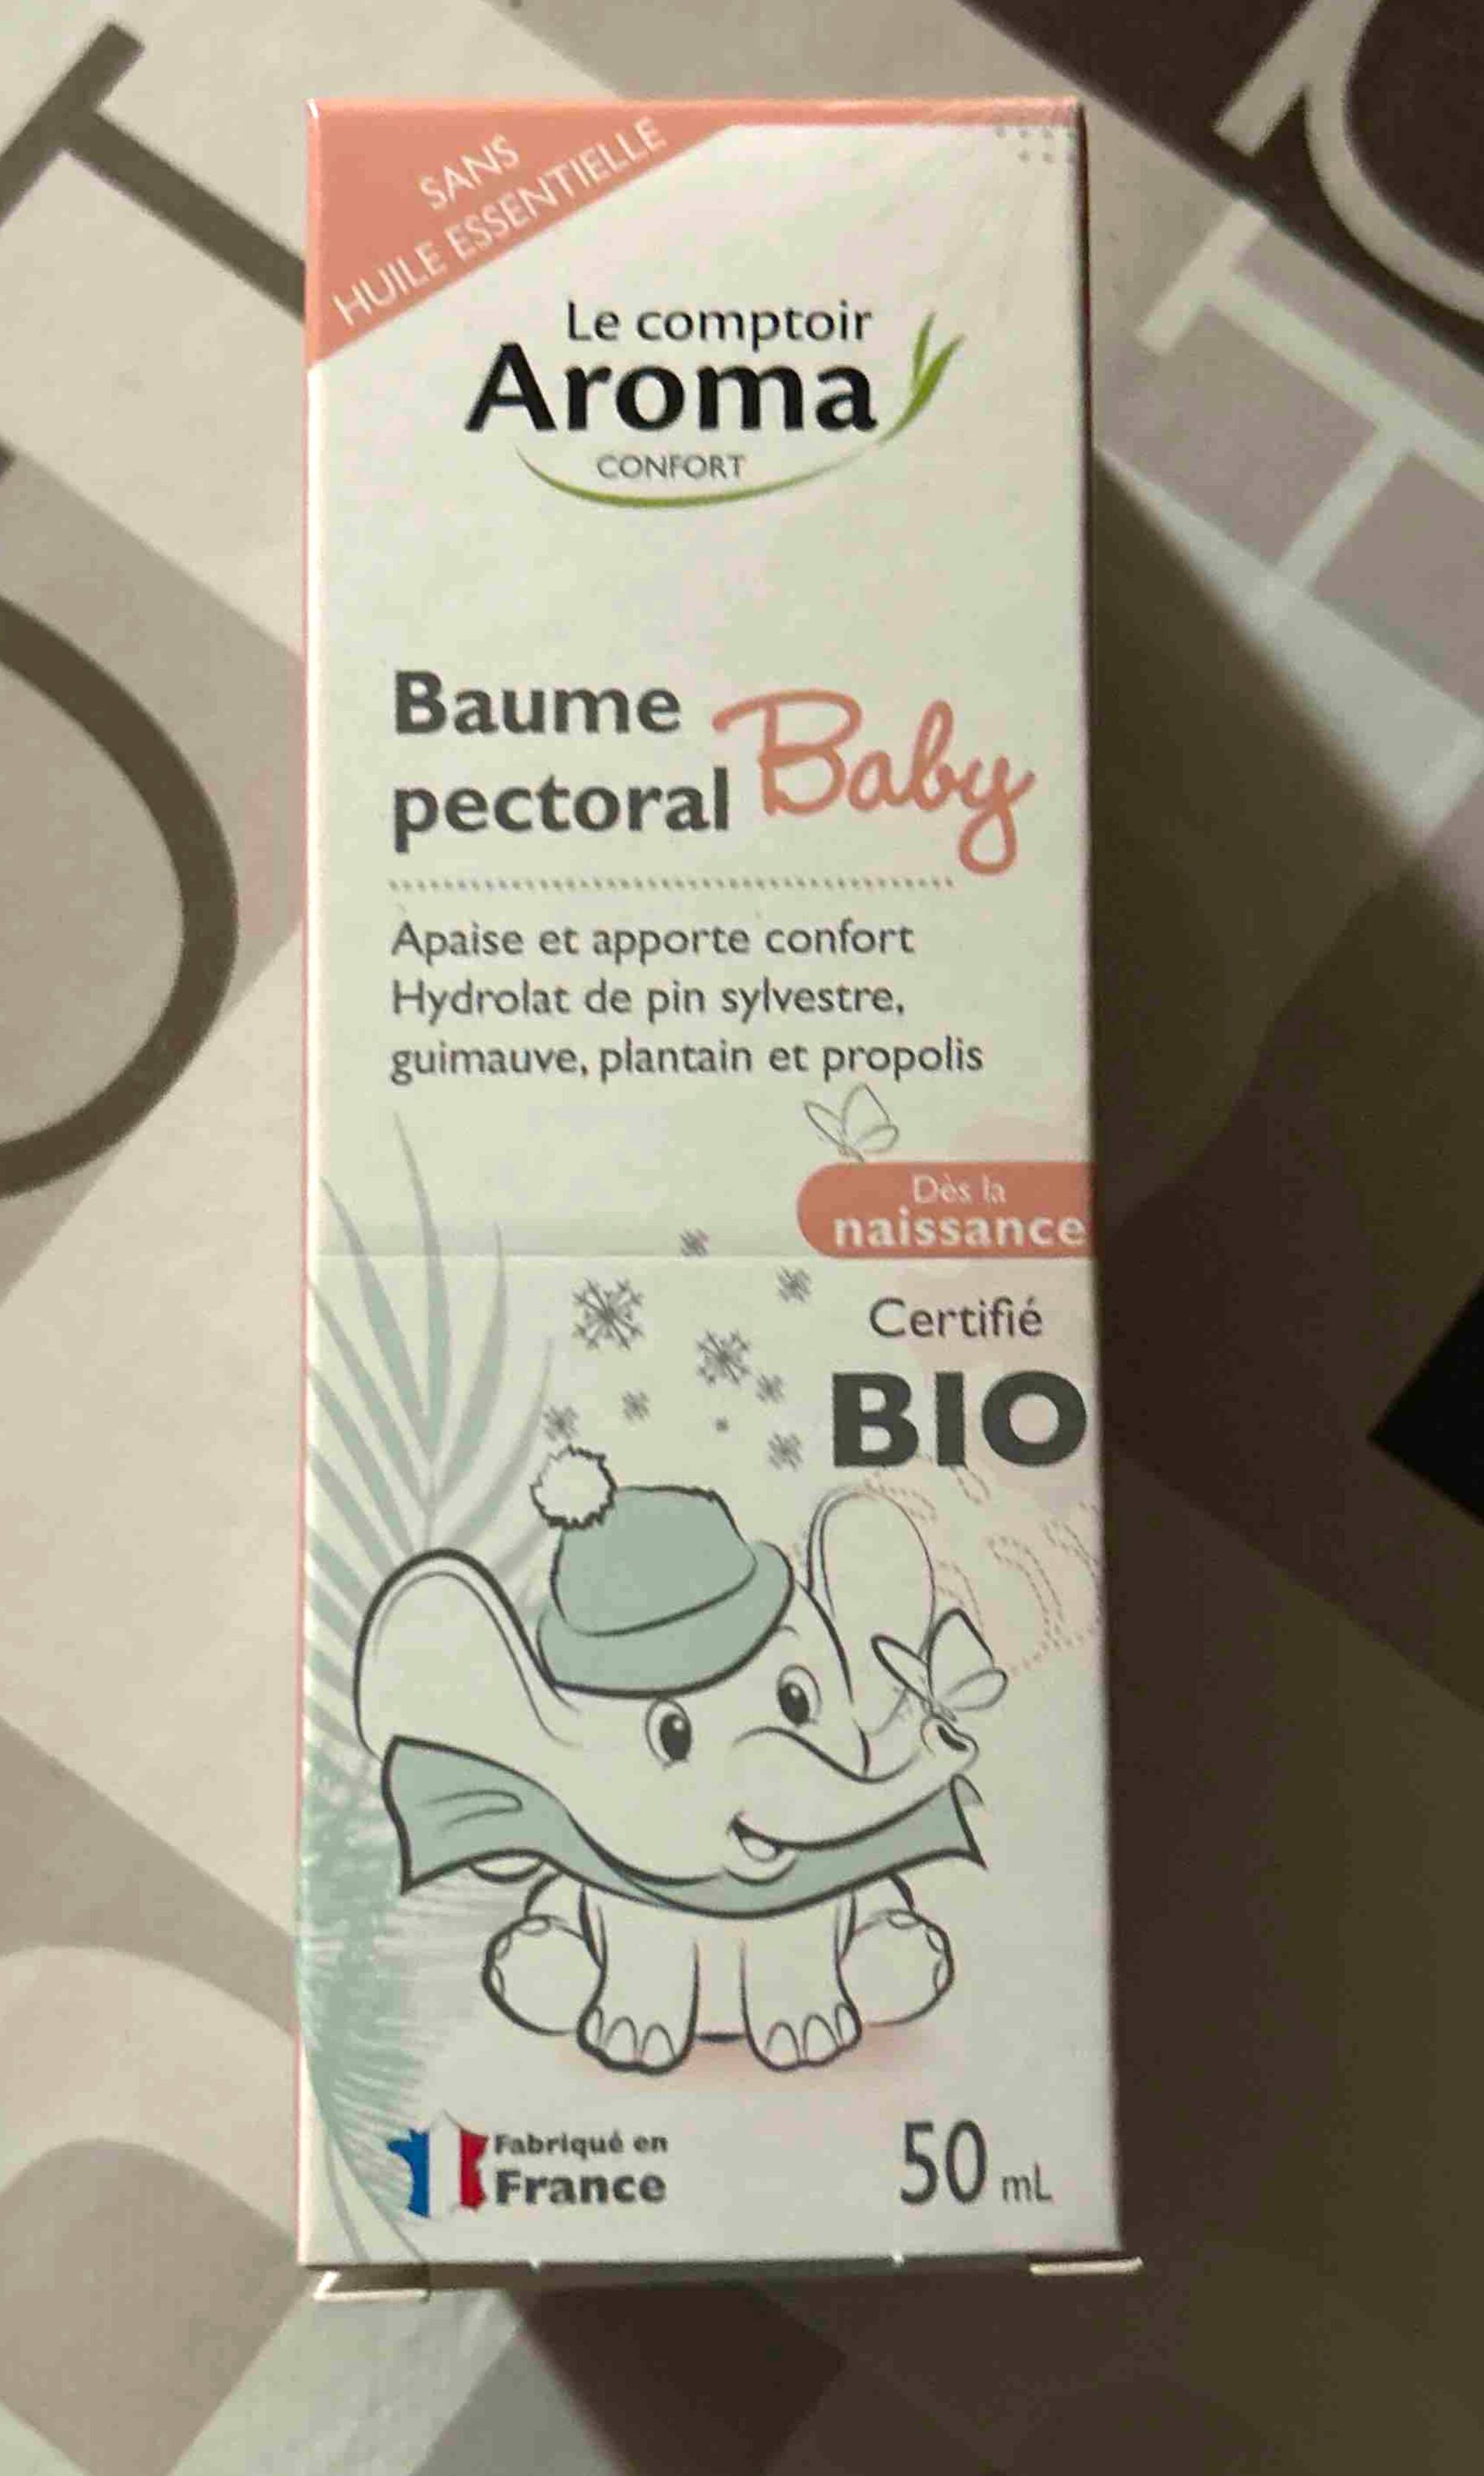 Baume Pectoral bébé - Le comptoir Aroma - Bio - Dès la naissance